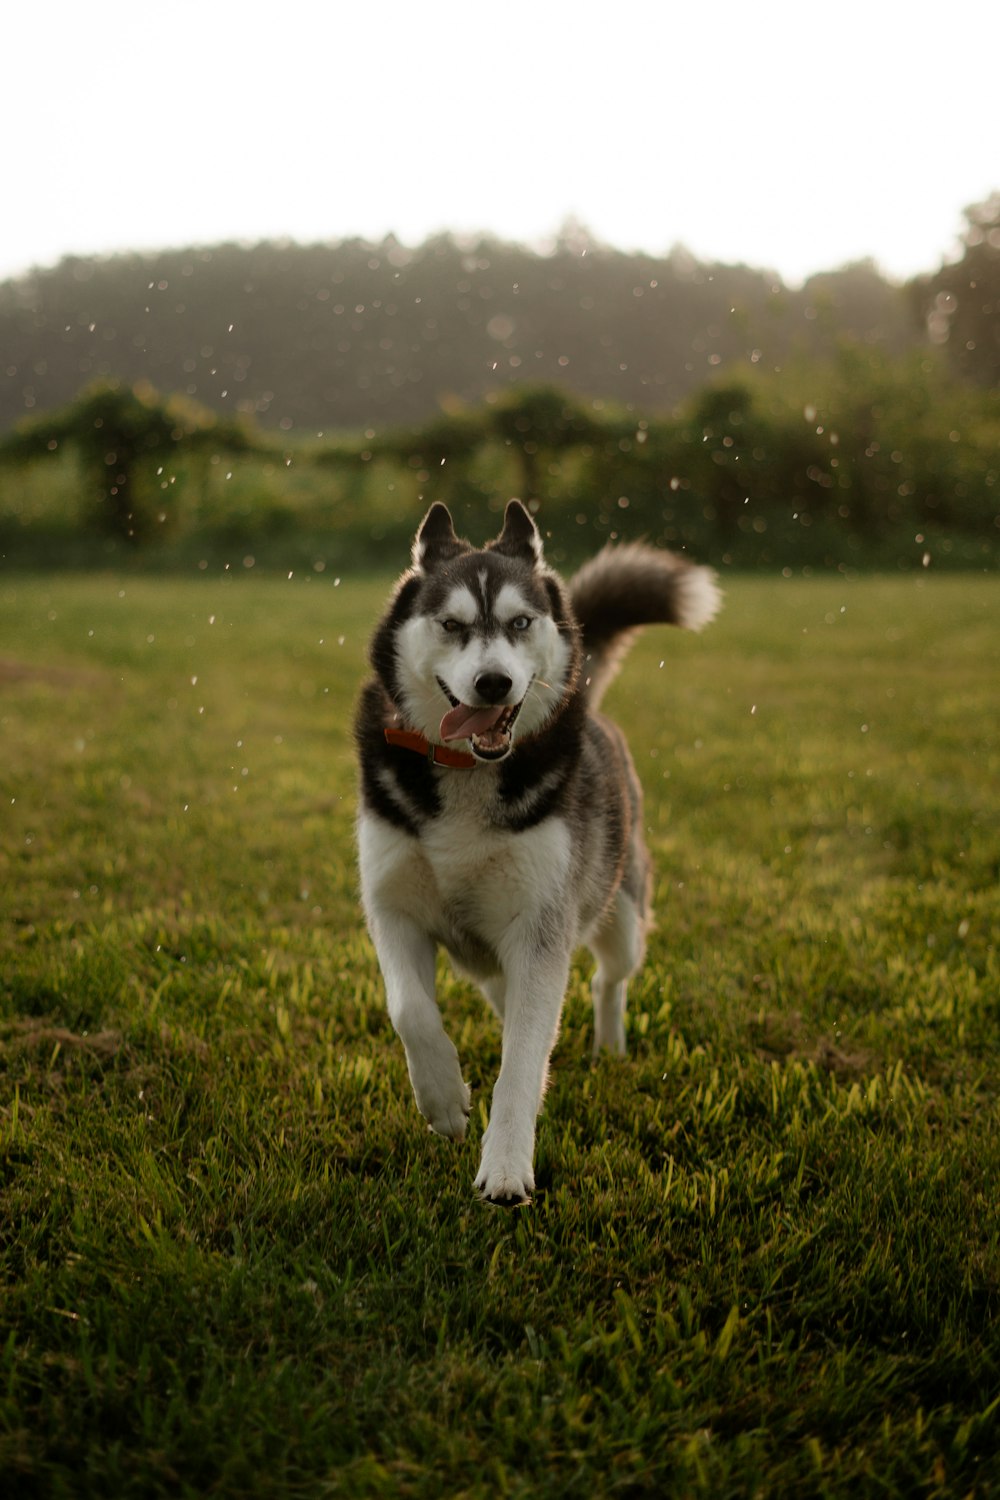 a husky dog running through a field of grass